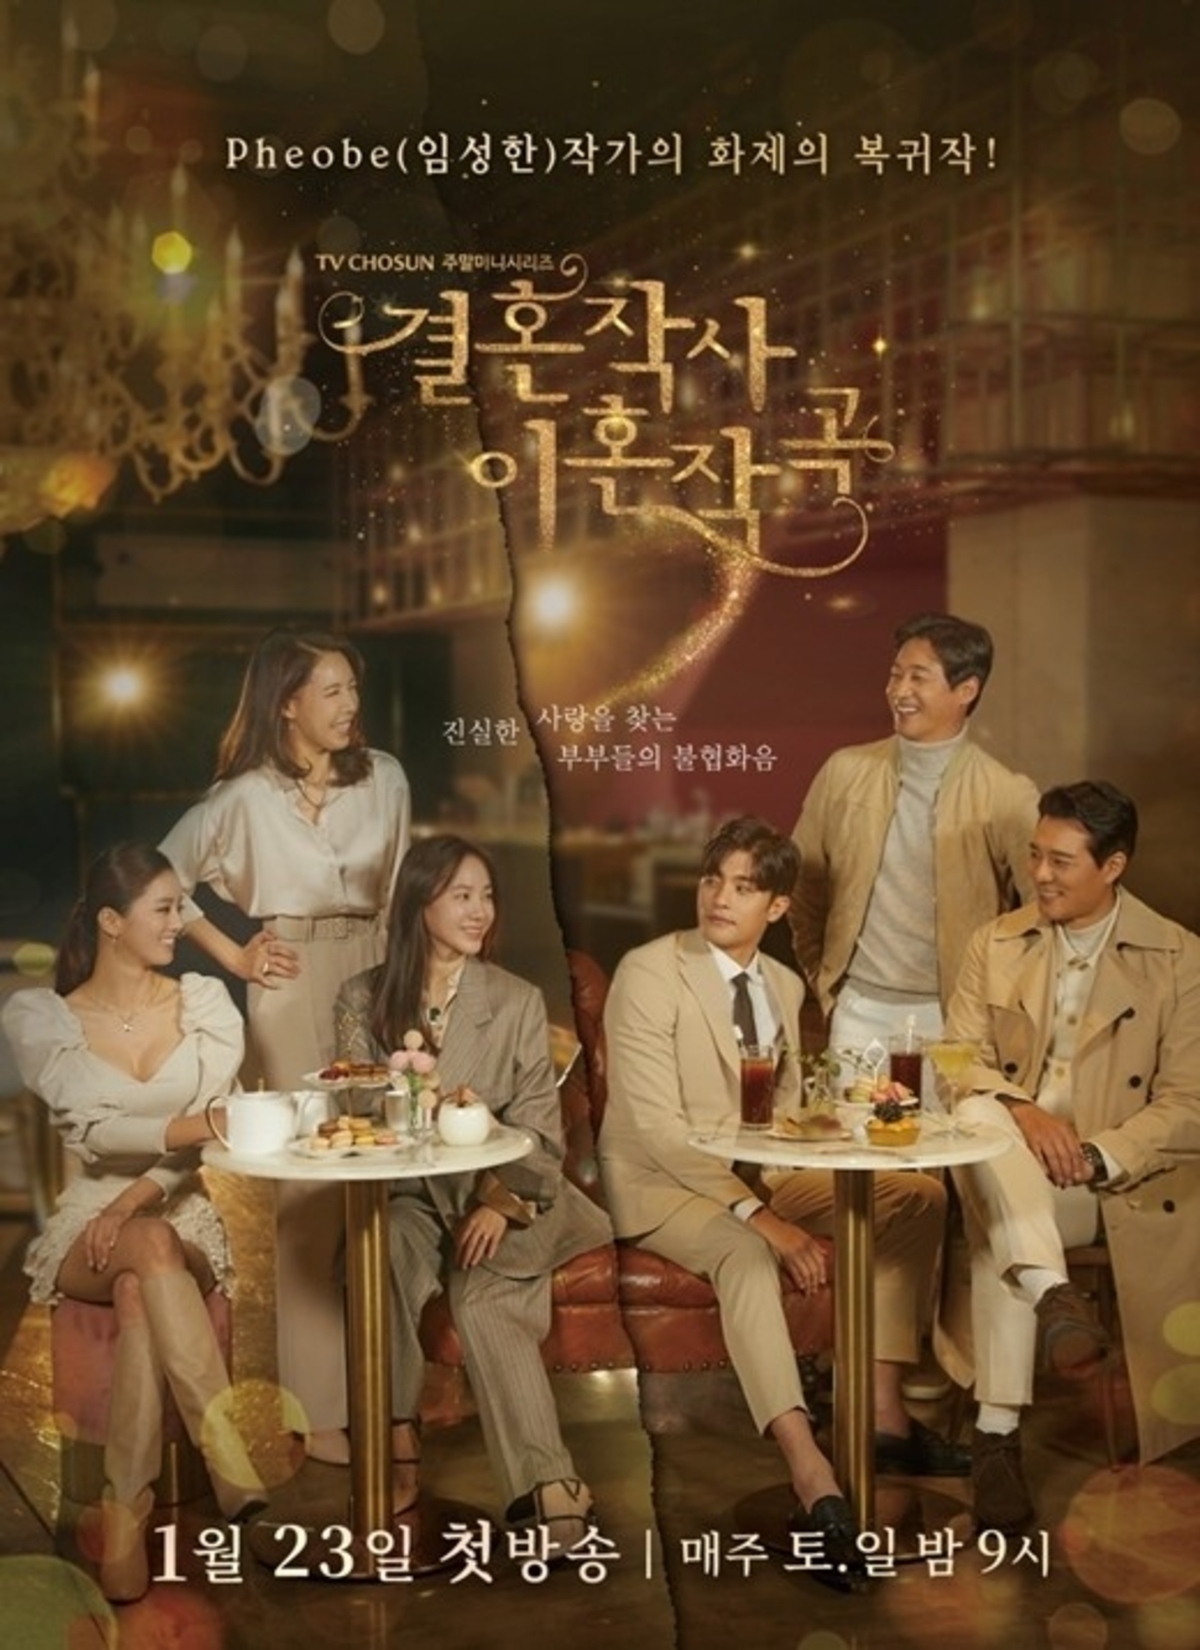 ドラマ 結婚作詞 離婚作曲 シーズン2の放送が決定 韓国で21年上半期の編成を予定 Kstyle